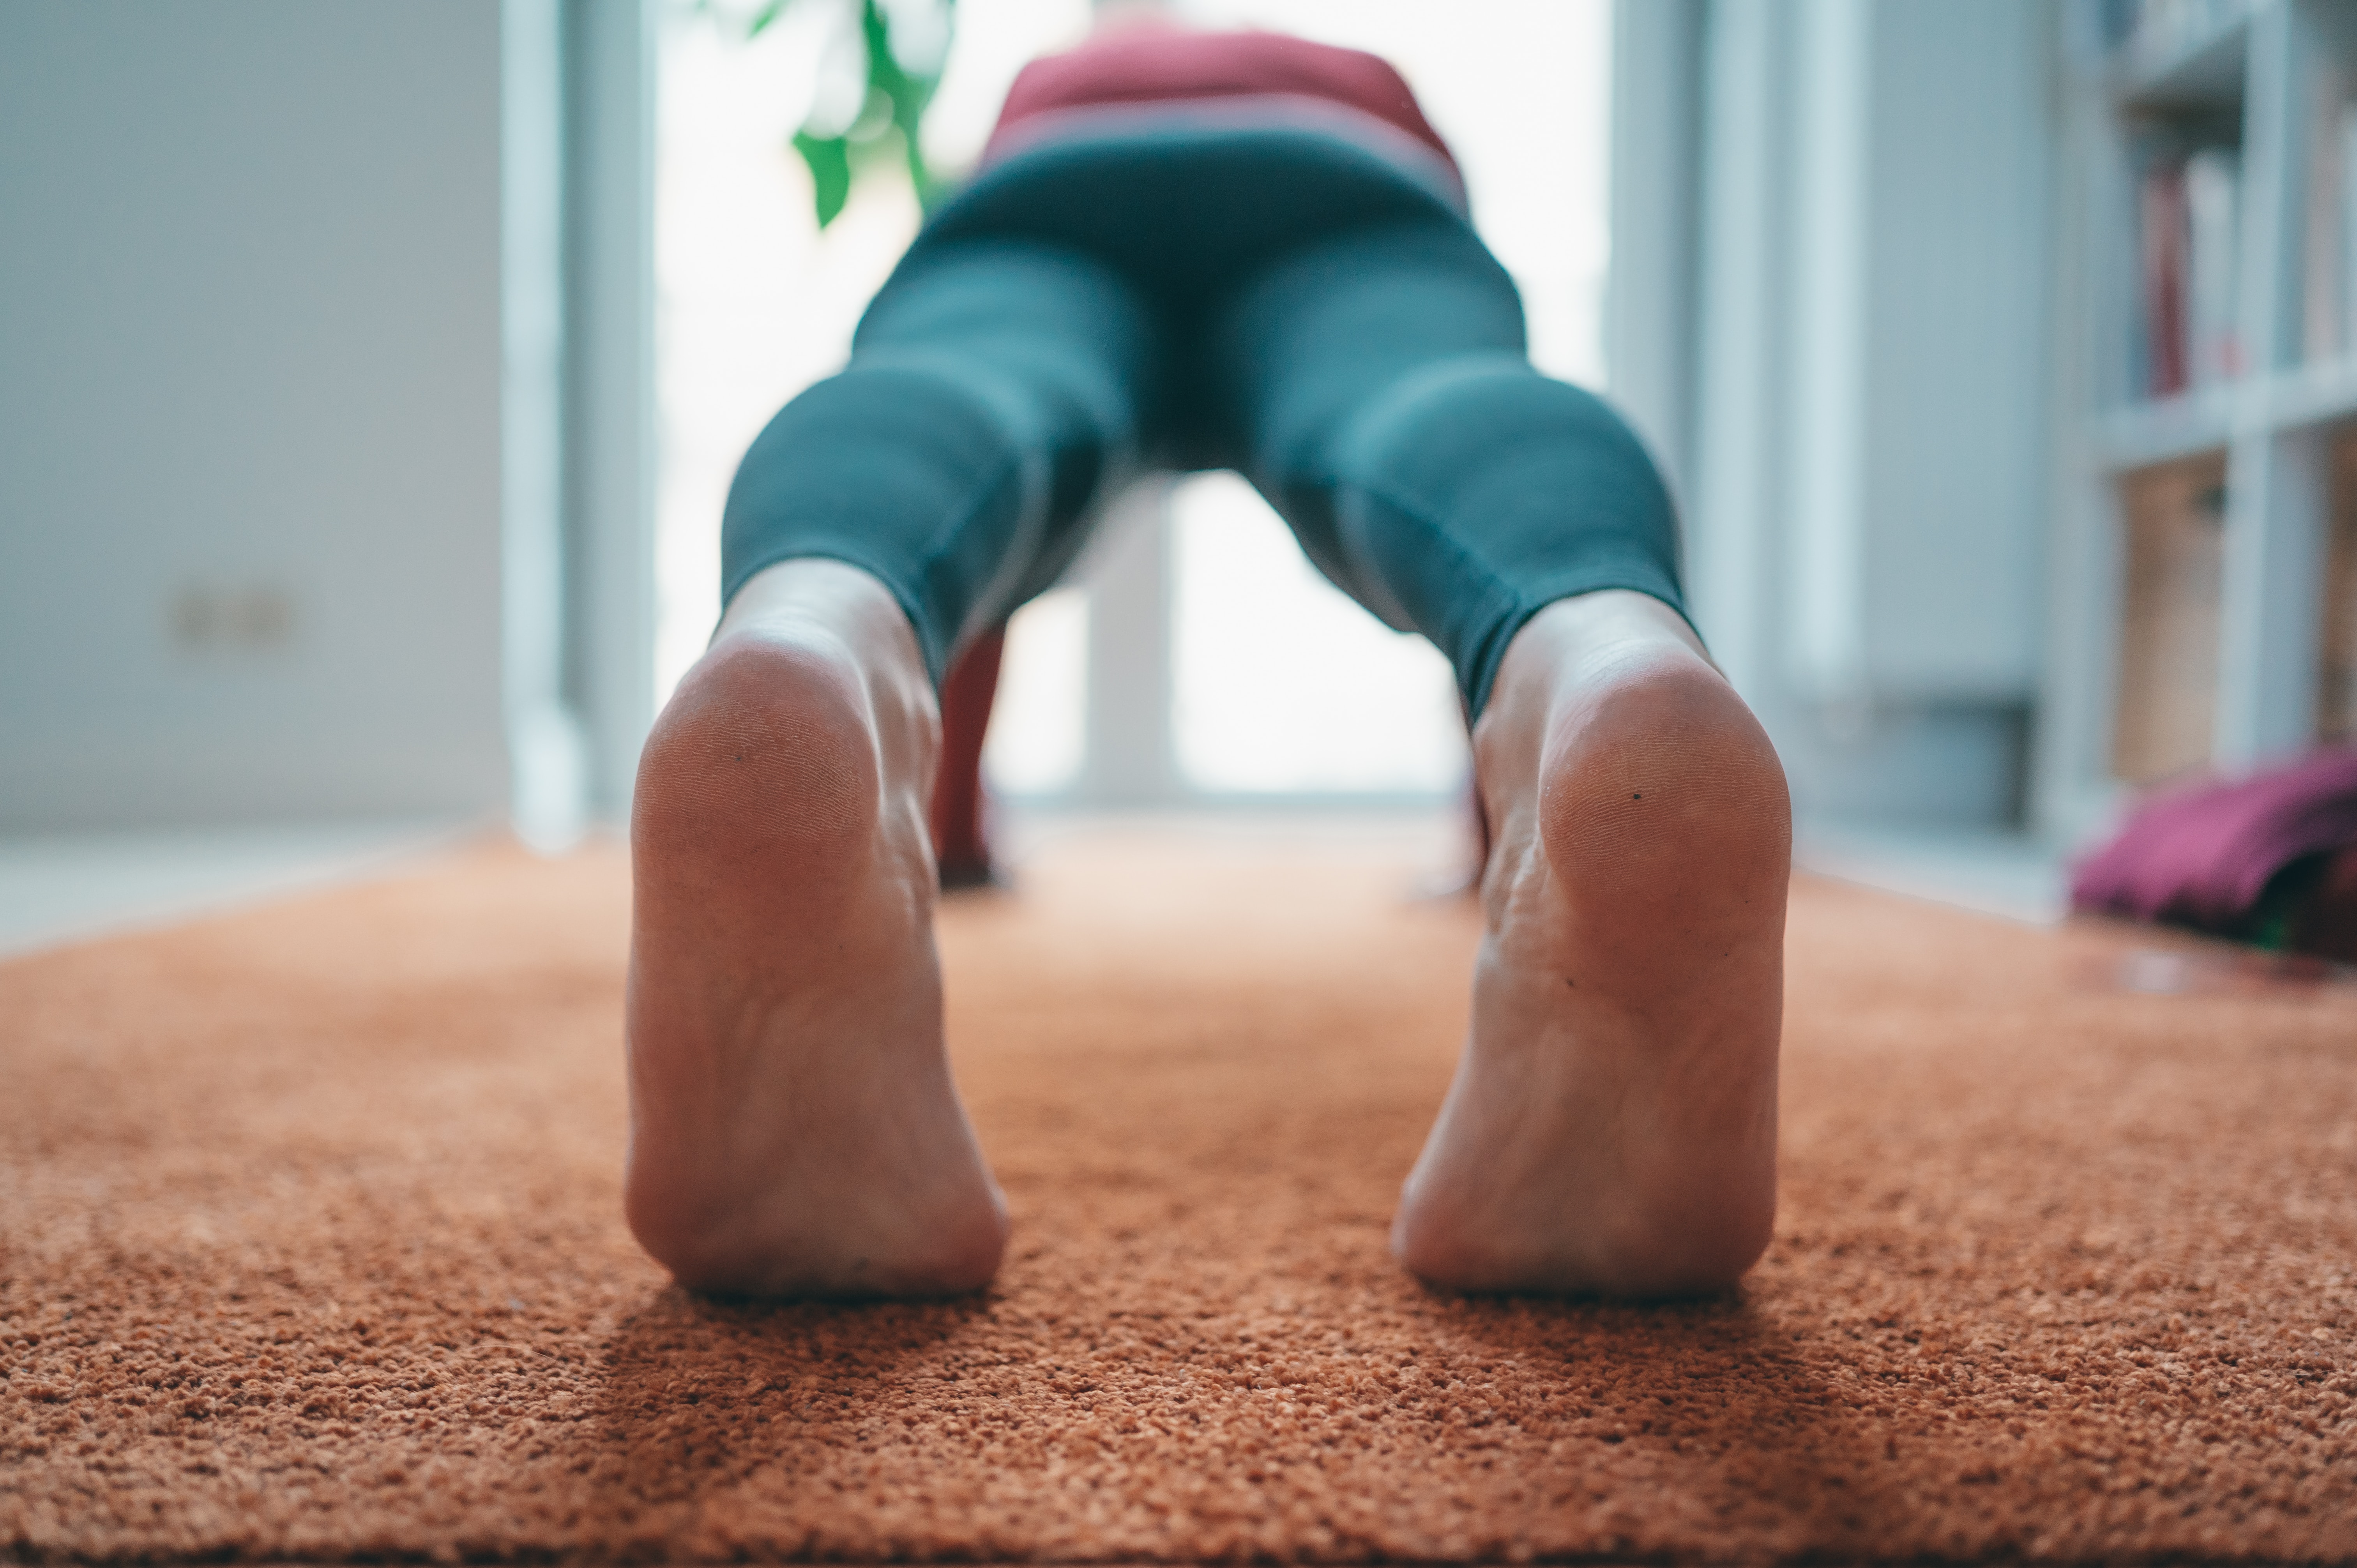 Los pies de una persona en primer plano están sobre una alfombra, practicando yoga o haciendo flexiones.